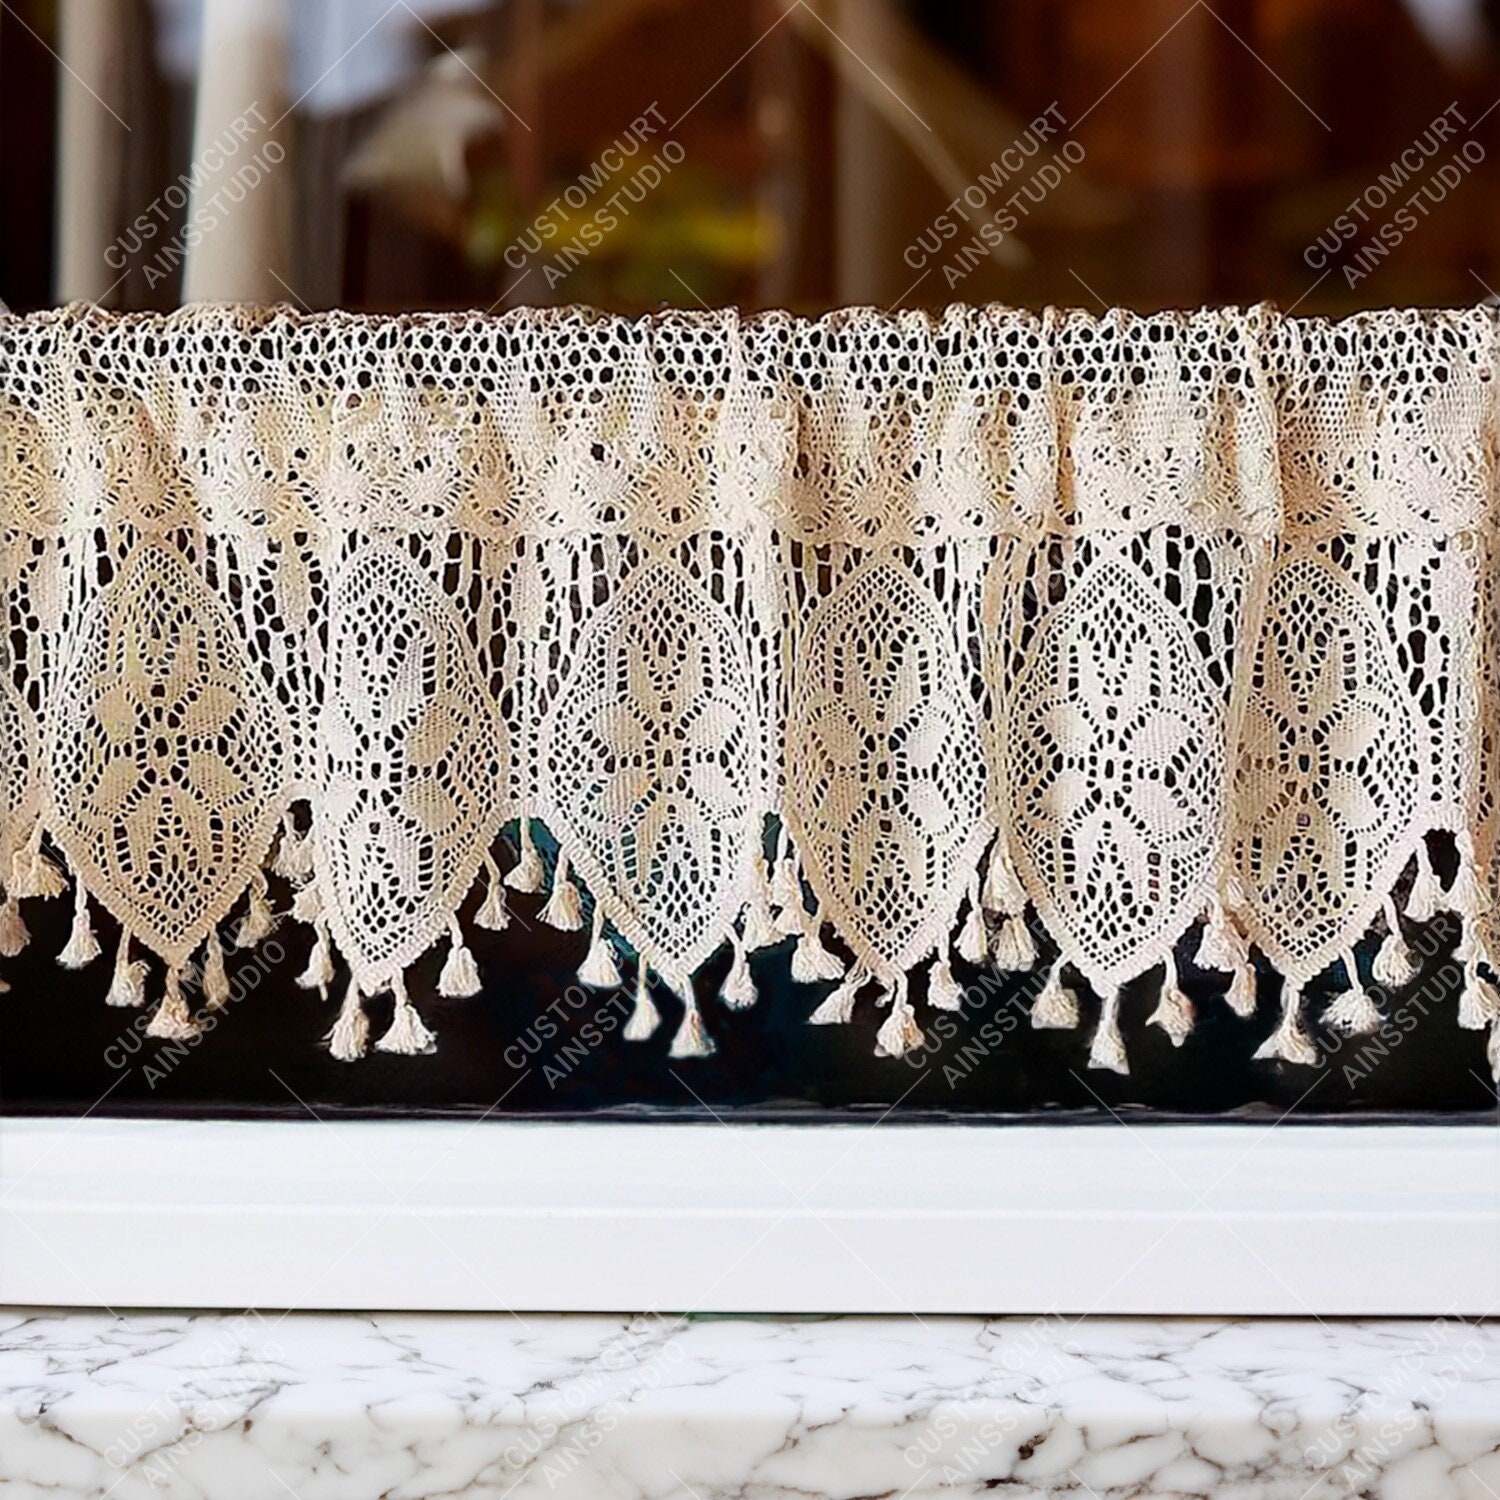 Cortina de café opaca corta para cocina, con motivos botánicos y florales,  rústica, bolsillo para barra, cortinas de niveles para sala de estar